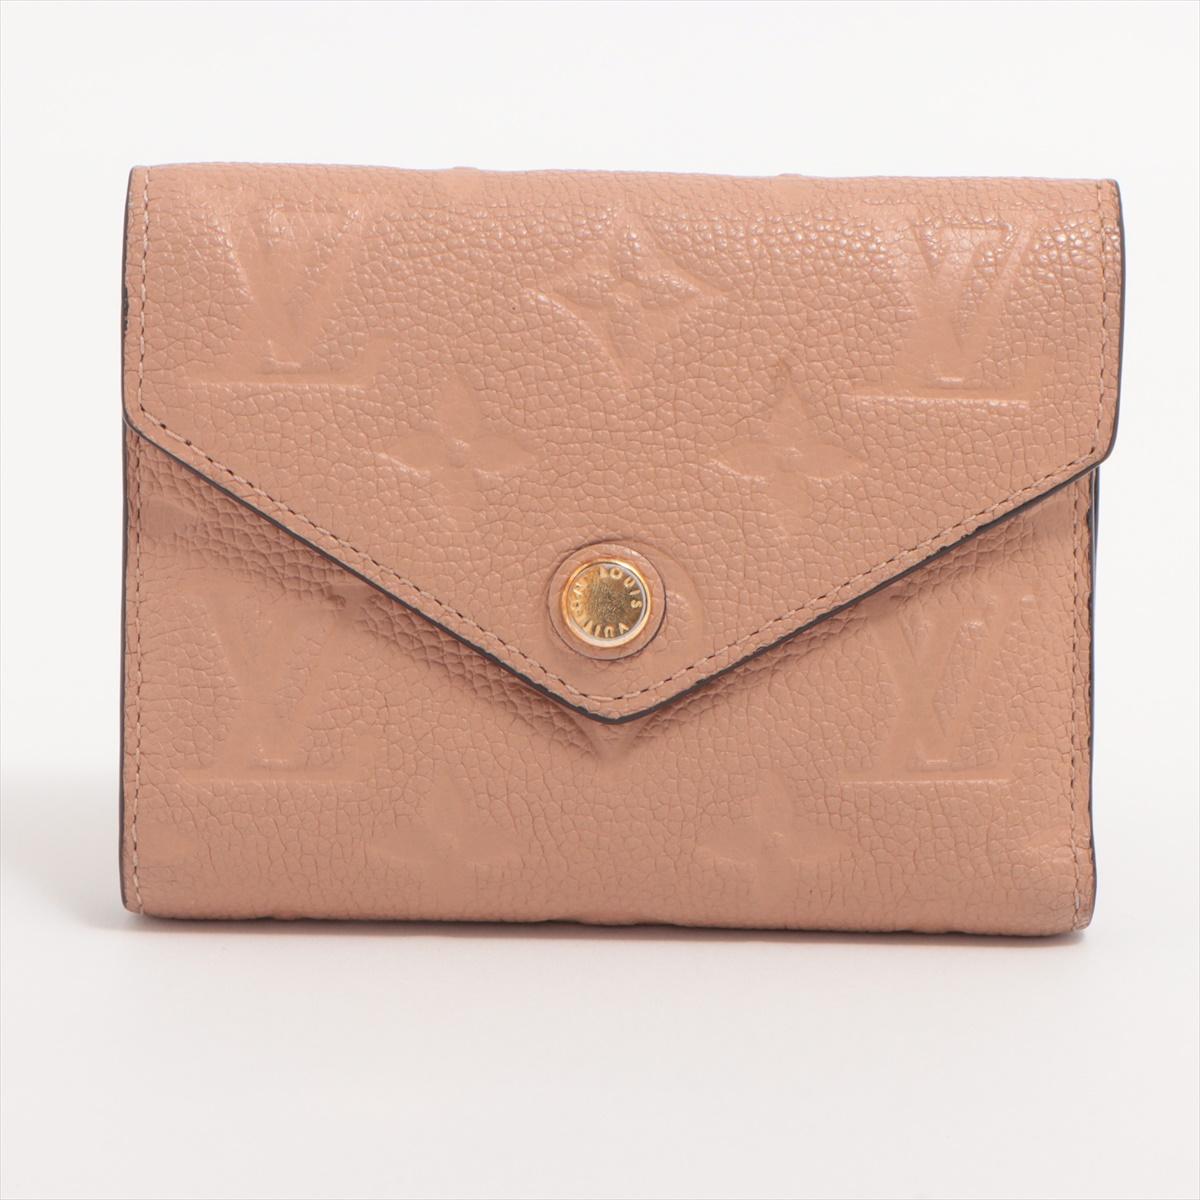 Das Louis Vuitton Monogram Empreinte Zoé Portemonnaie in Pink Beige ist ein luxuriöses und stilvolles Accessoire, das modernes Design mit dem kultigen Monogram Empreinte Muster perfekt verbindet. Das Portemonnaie besteht aus kostbarem rosa-beigem